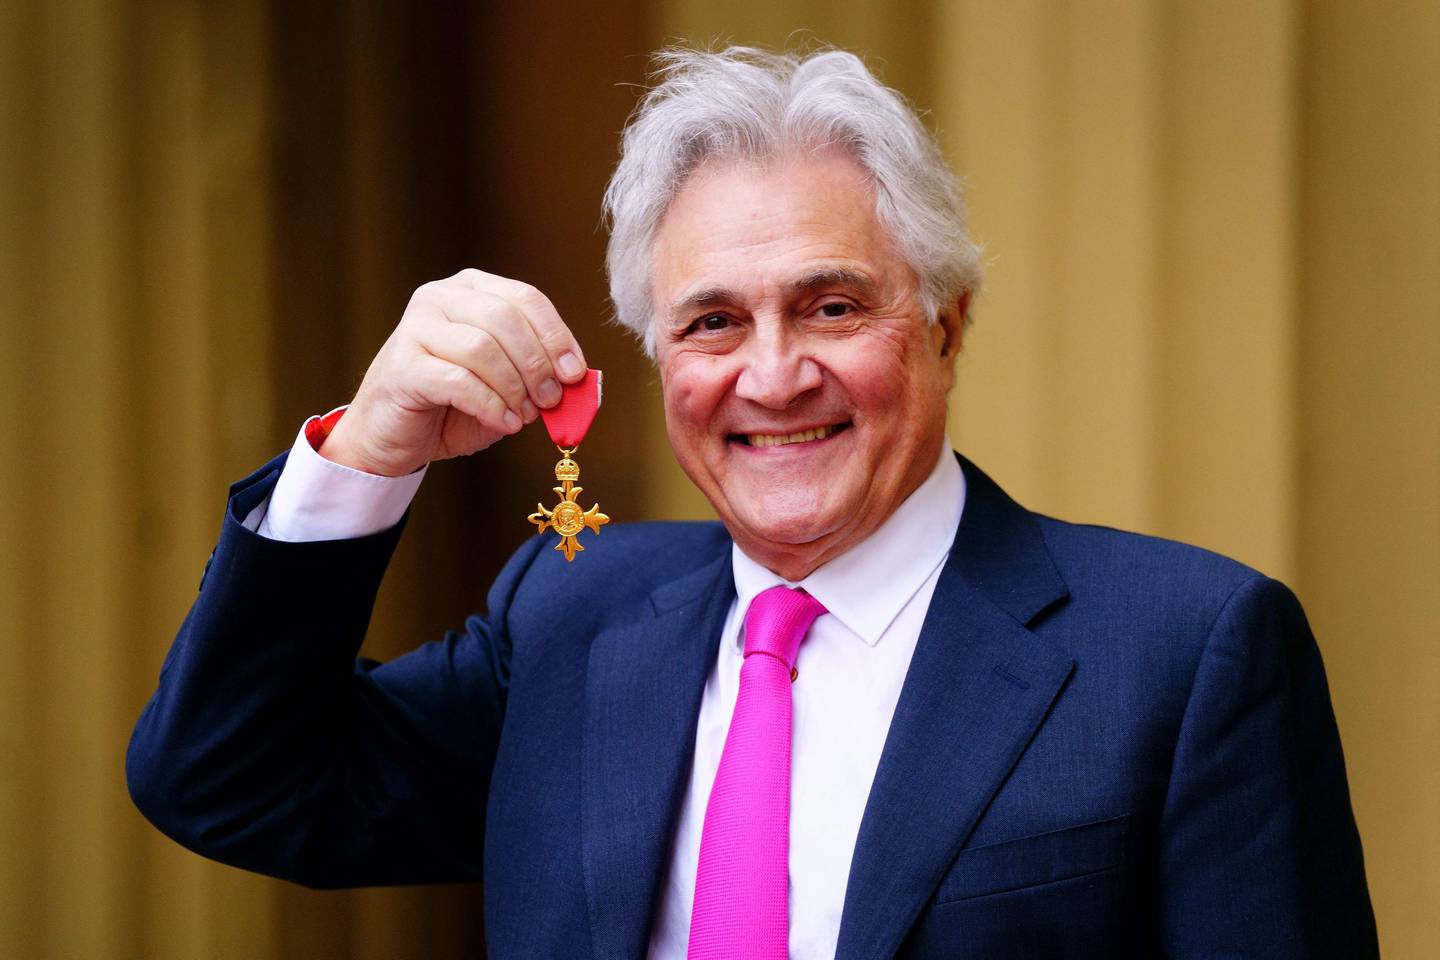 Le diffuseur anglais John Suchet pose avec une médaille après avoir été nommé Officier de l'Ordre de l'Empire britannique à la suite d'une cérémonie d'investiture au palais de Buckingham, dans le centre de Londres.  AFP